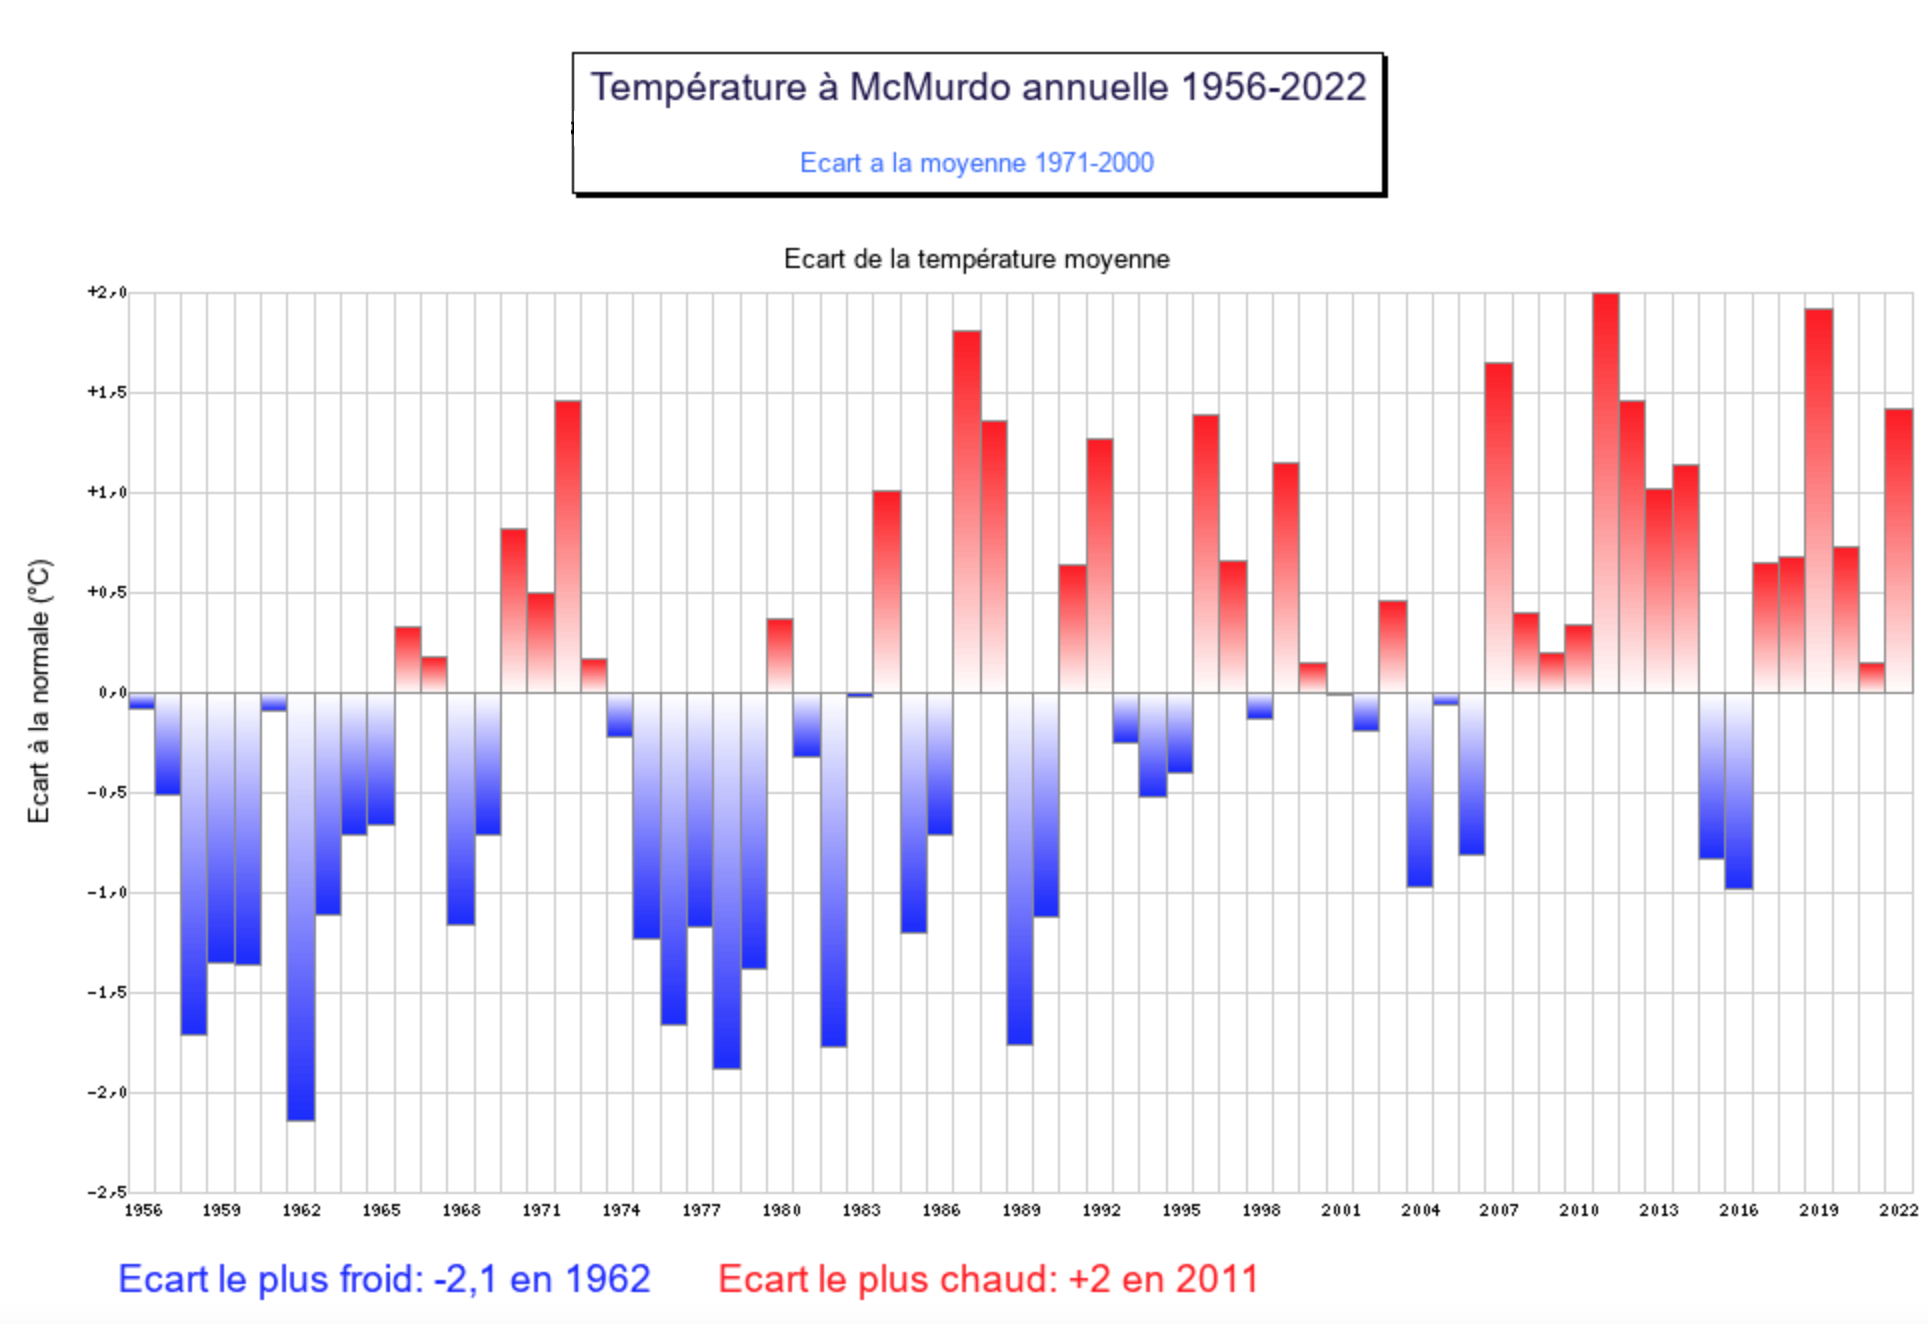 Ecart de la température moyenne annuelle à Mc Murdo; Source: Météo Climat